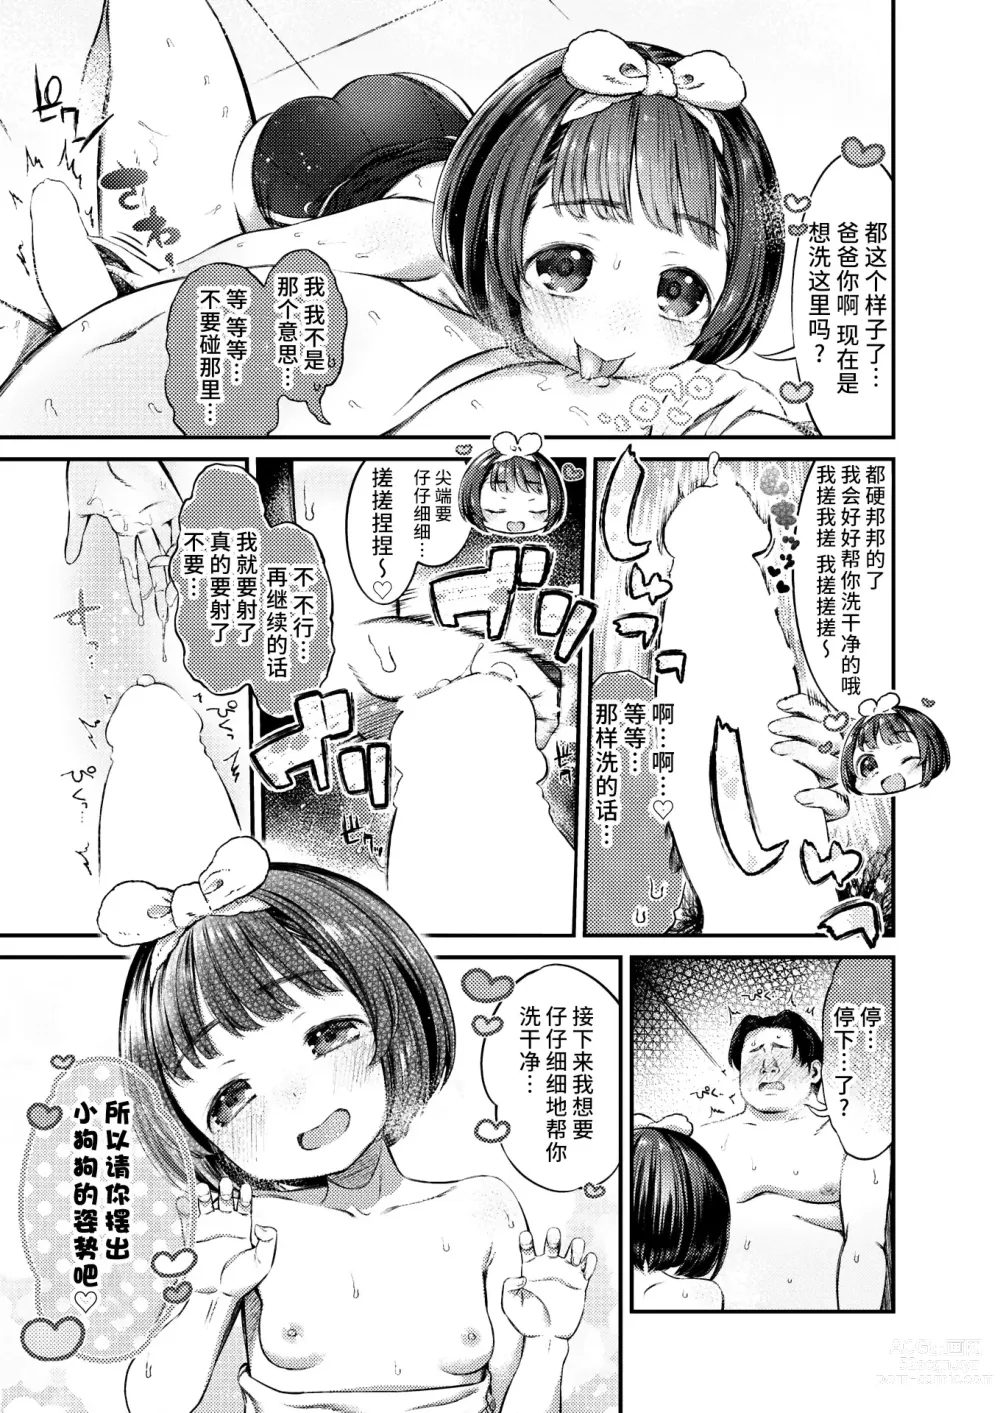 Page 7 of manga Papakatsu ni wa Kiken ga Ippai! - Papa Sex with Dangerous Girl